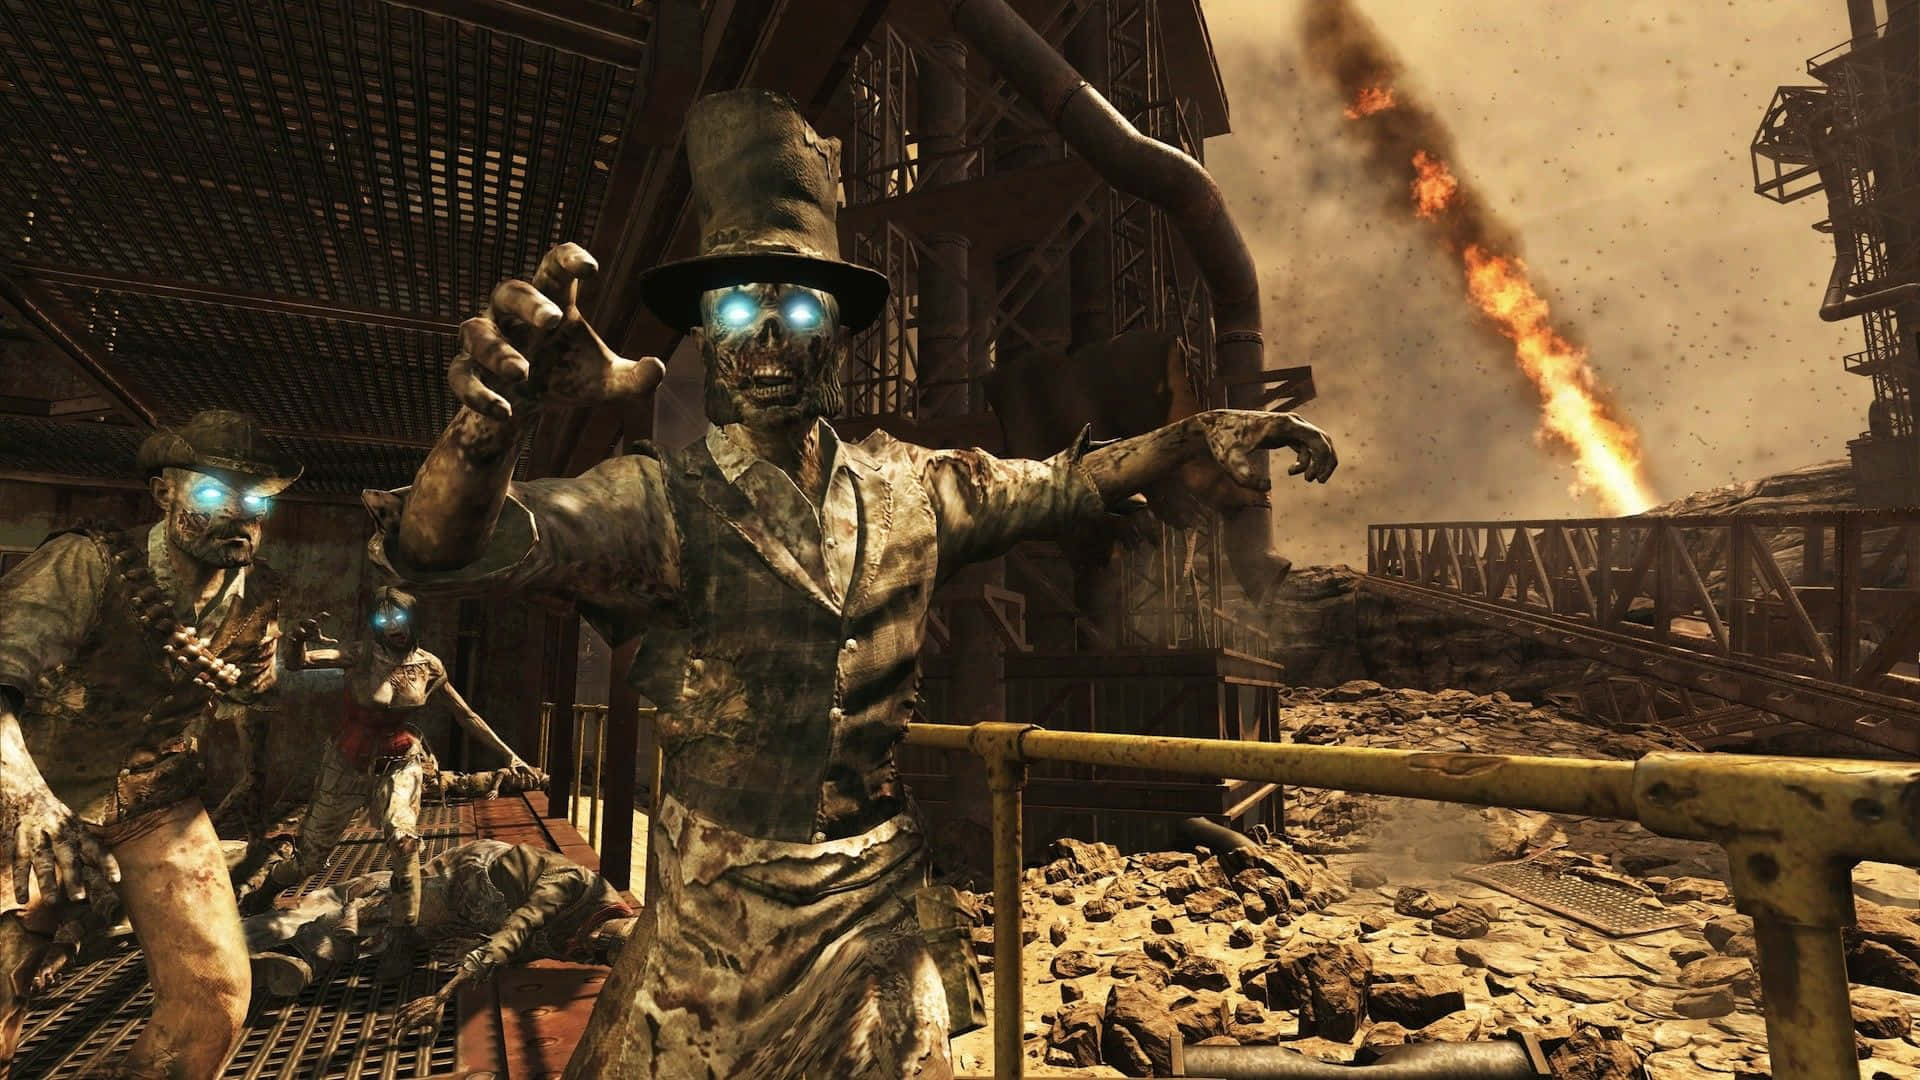 Kald på Duty Black Ops 2 Zombiekarakterer Wallpaper Wallpaper